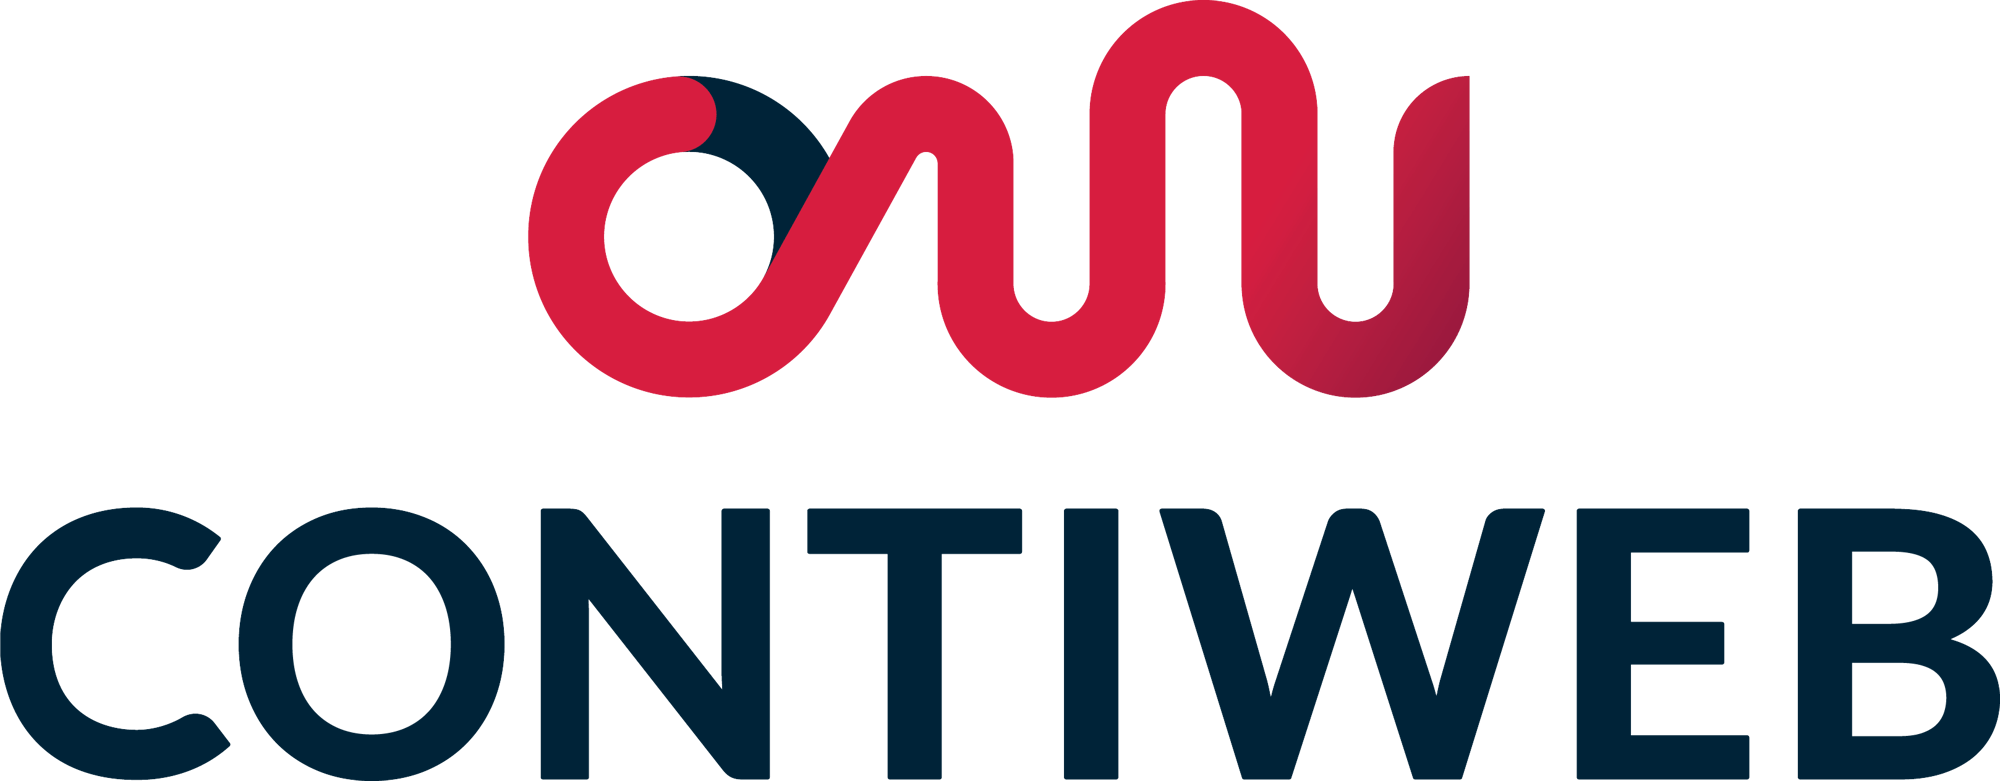 contiweb-logo-1